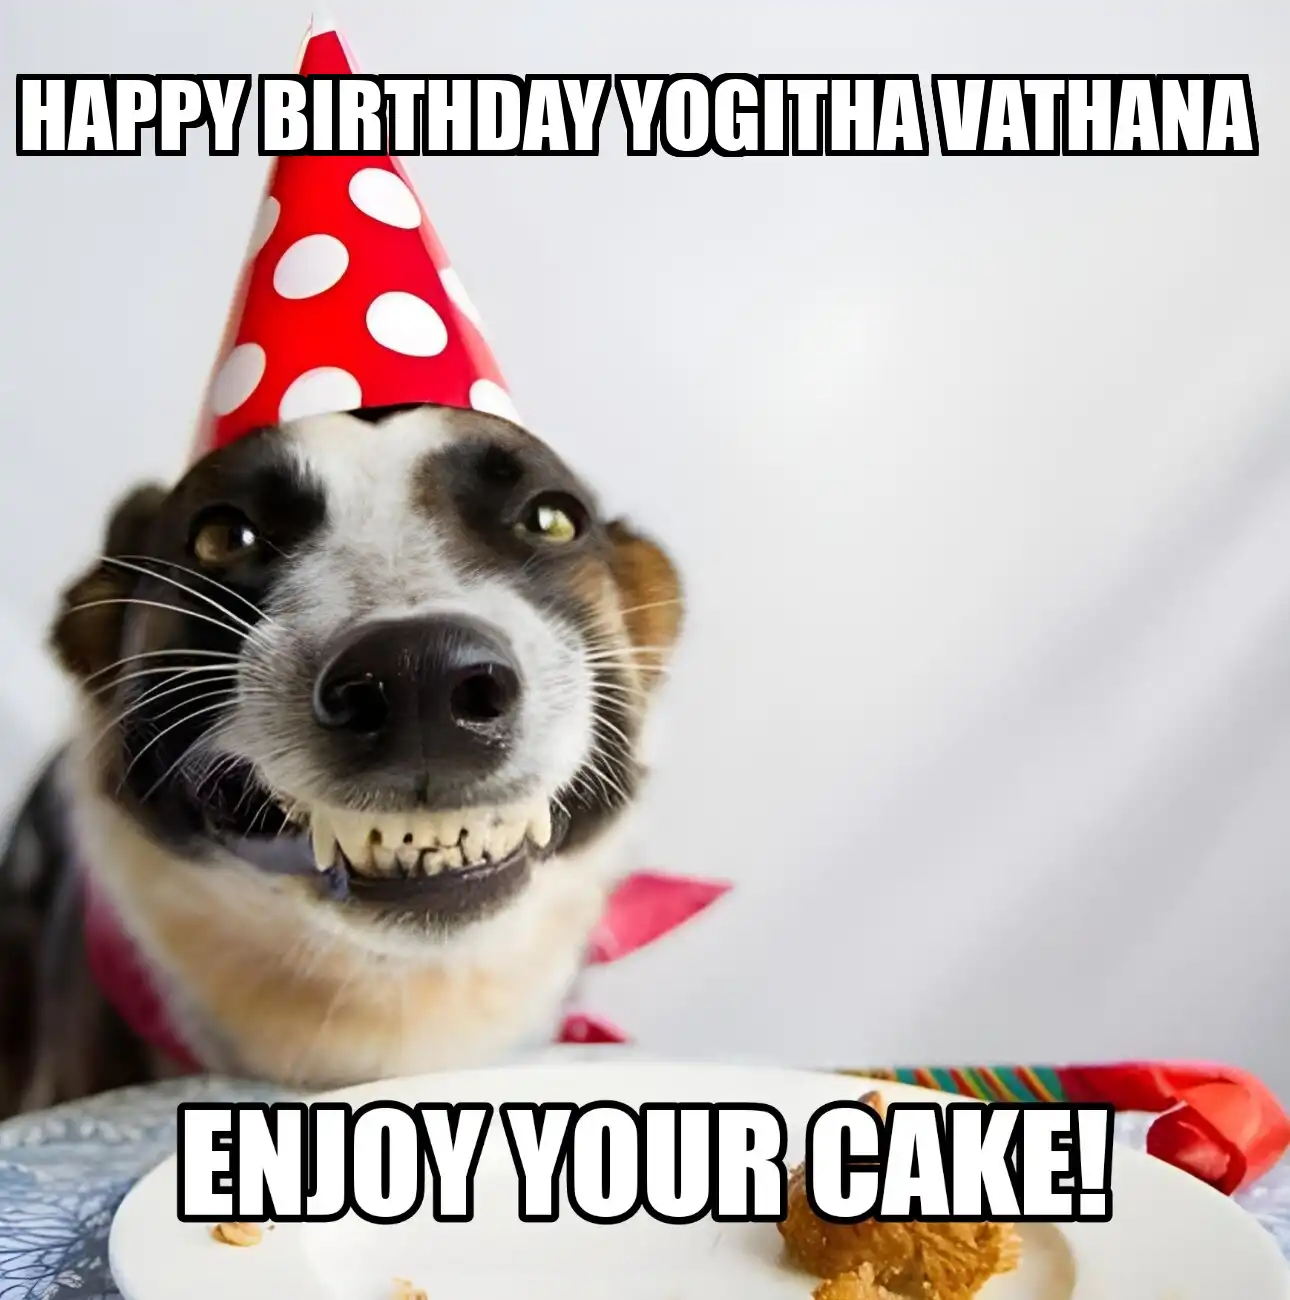 Happy Birthday Yogitha vathana Enjoy Your Cake Dog Meme